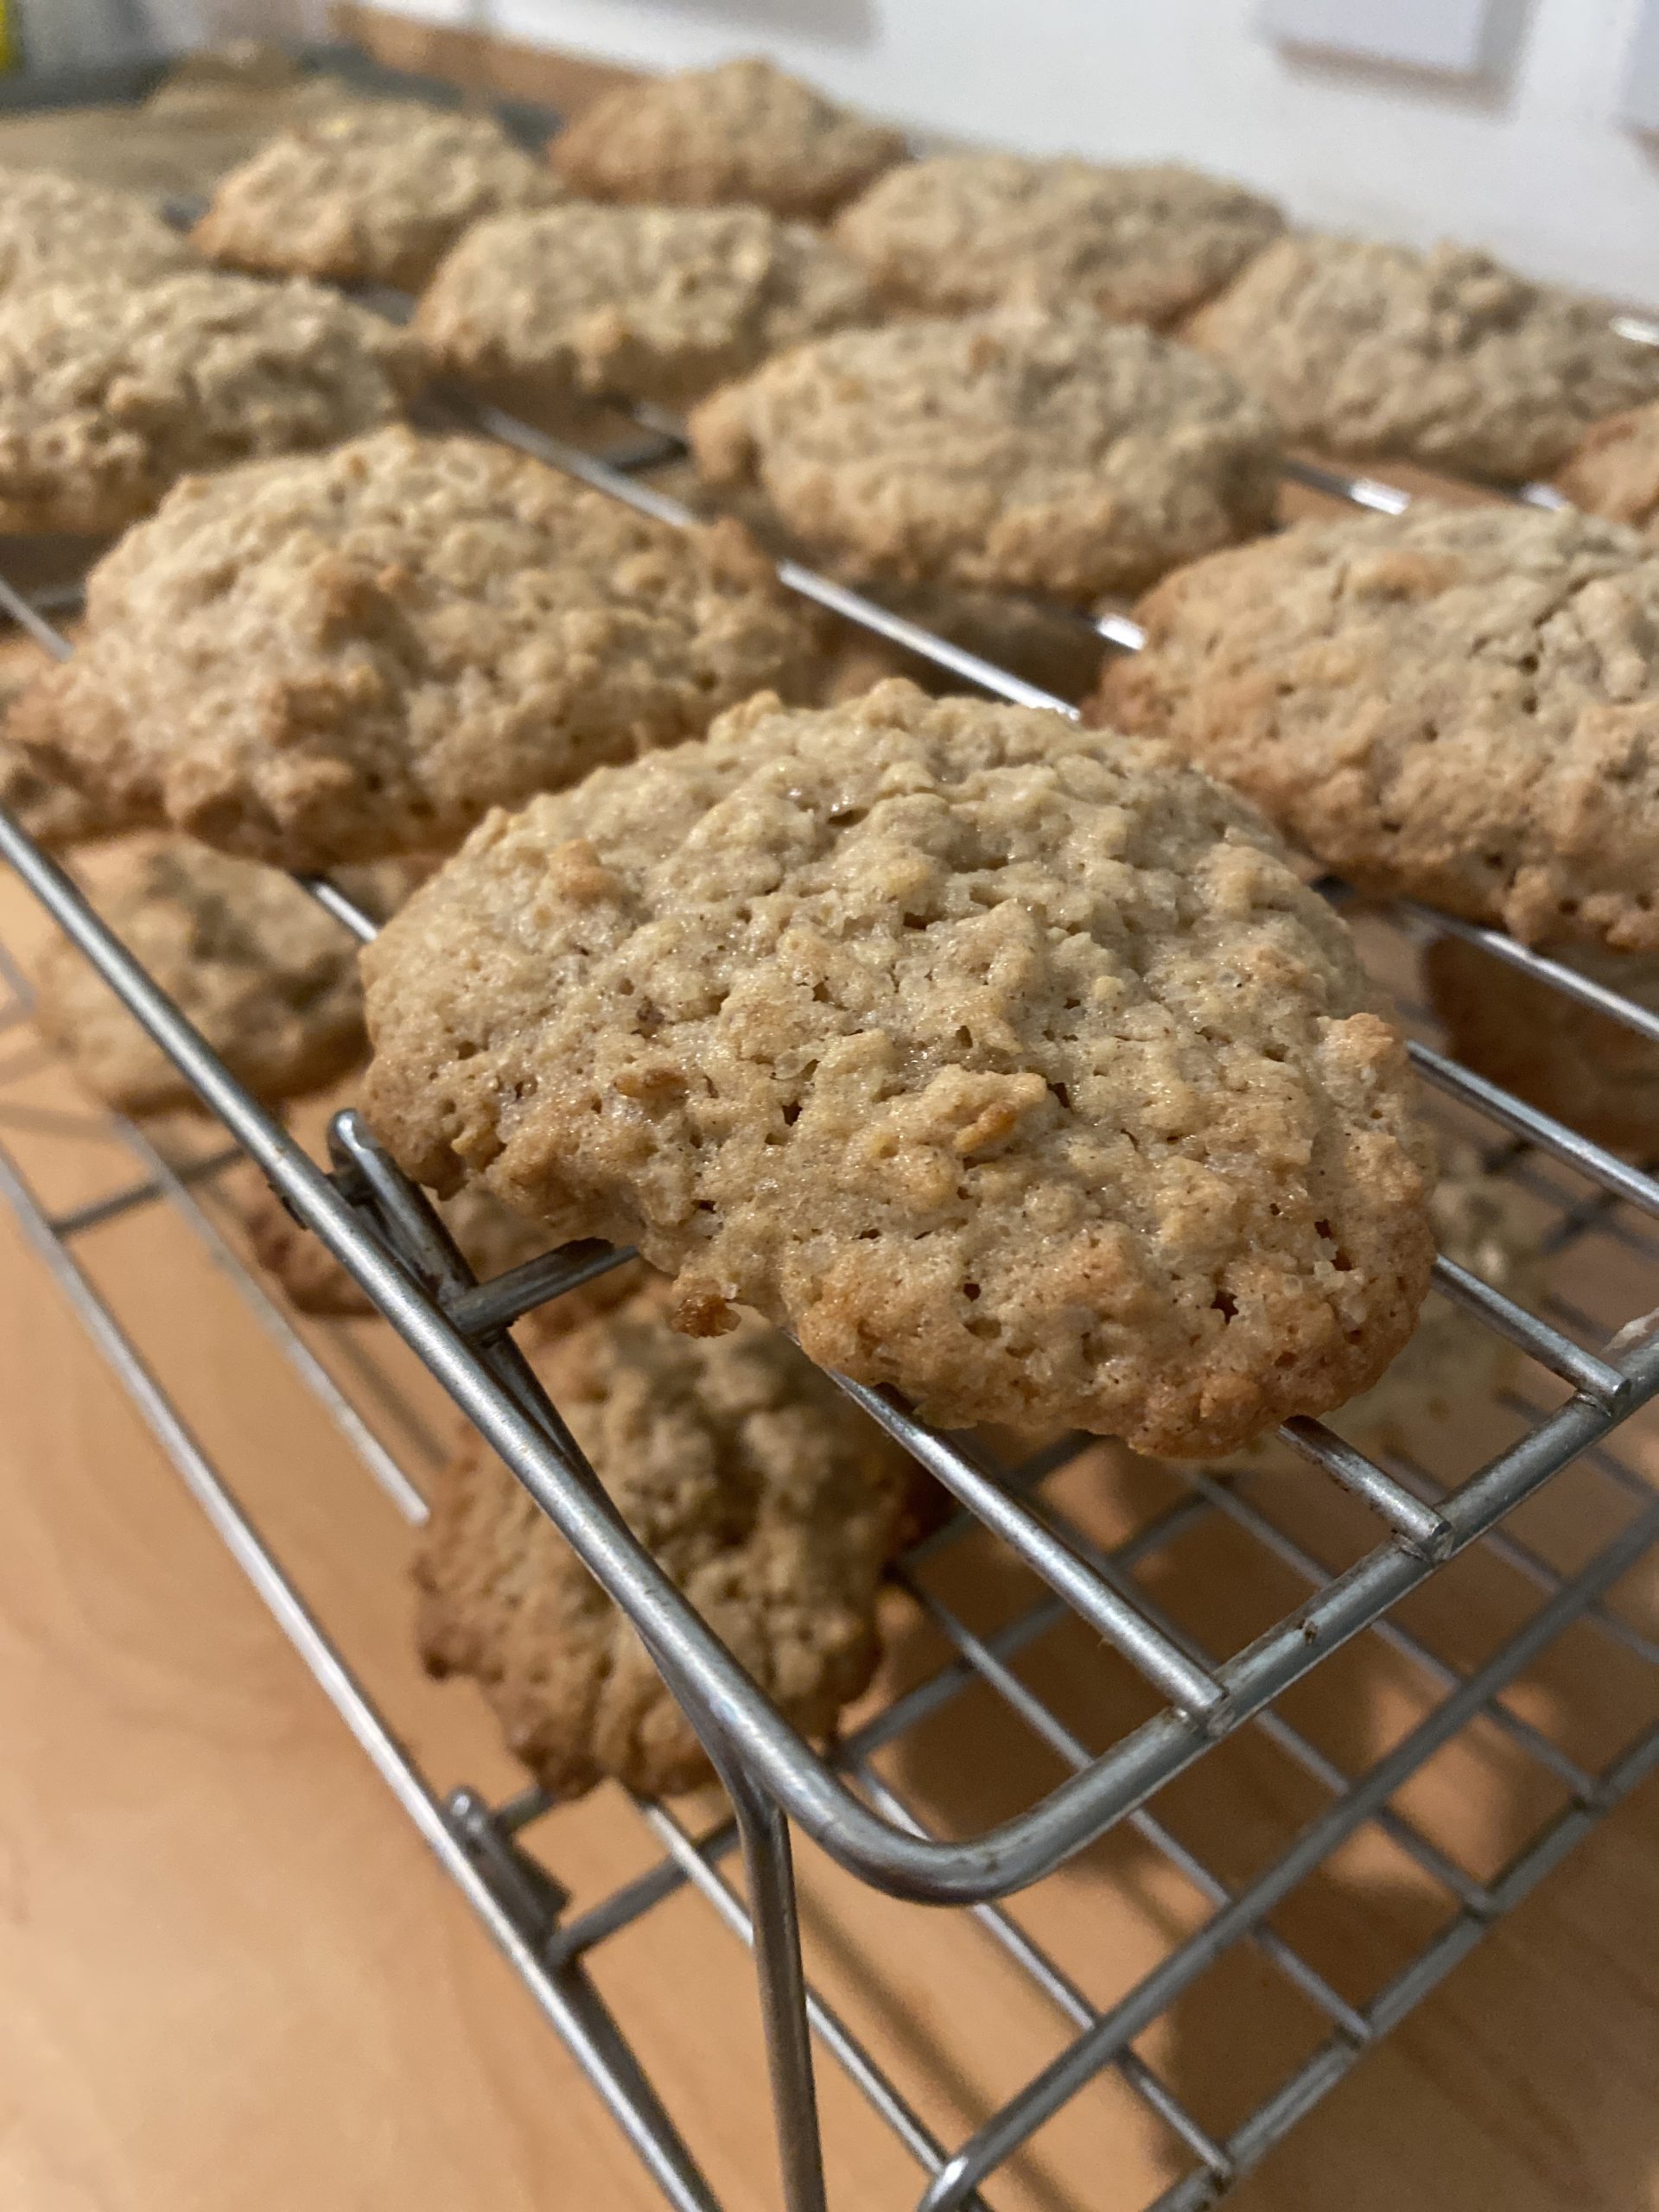 Basic oatmeal cookie recipe